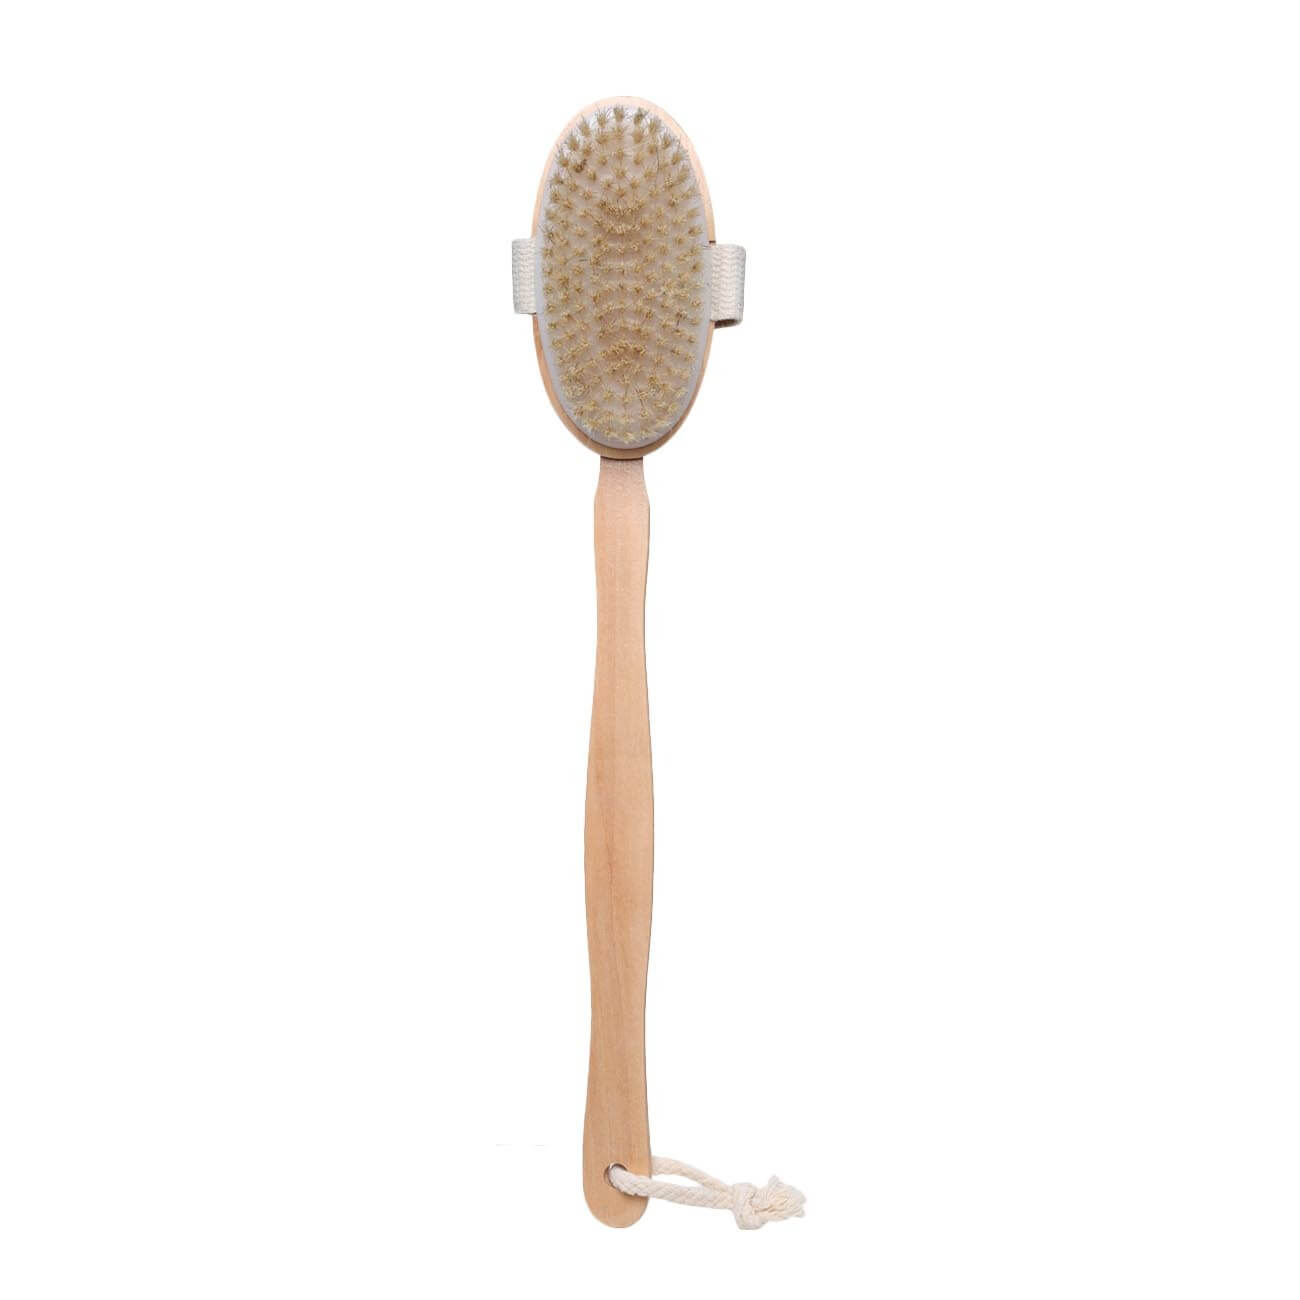 Щетка для сухого массажа, 40 см, с держателем, дерево/нейлон, Bamboo spa щетка губка для чернения резины 28 см